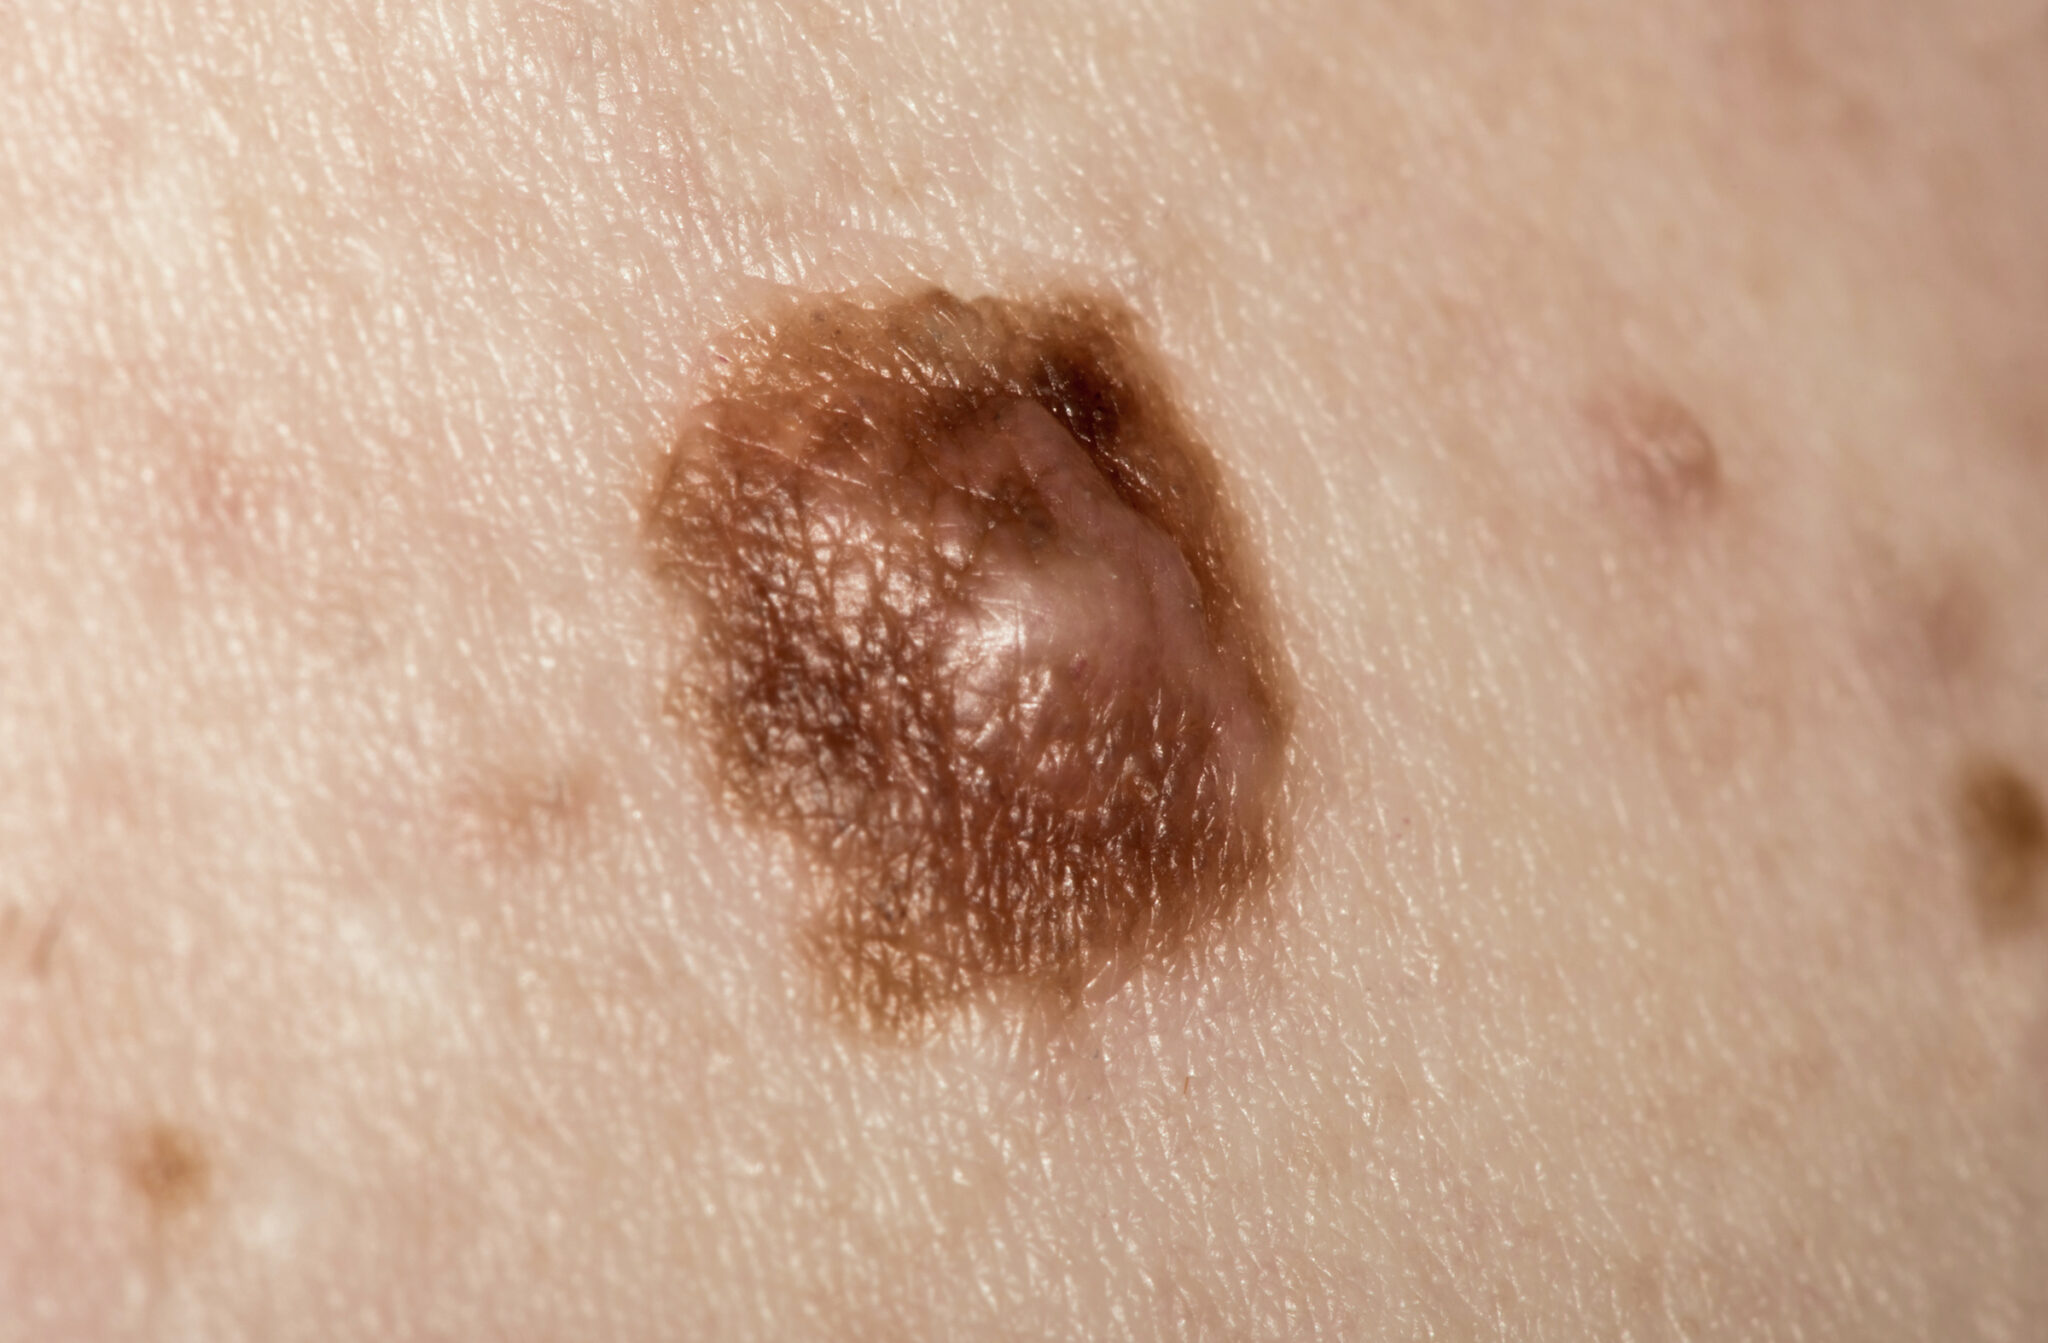 cancerous moles images 